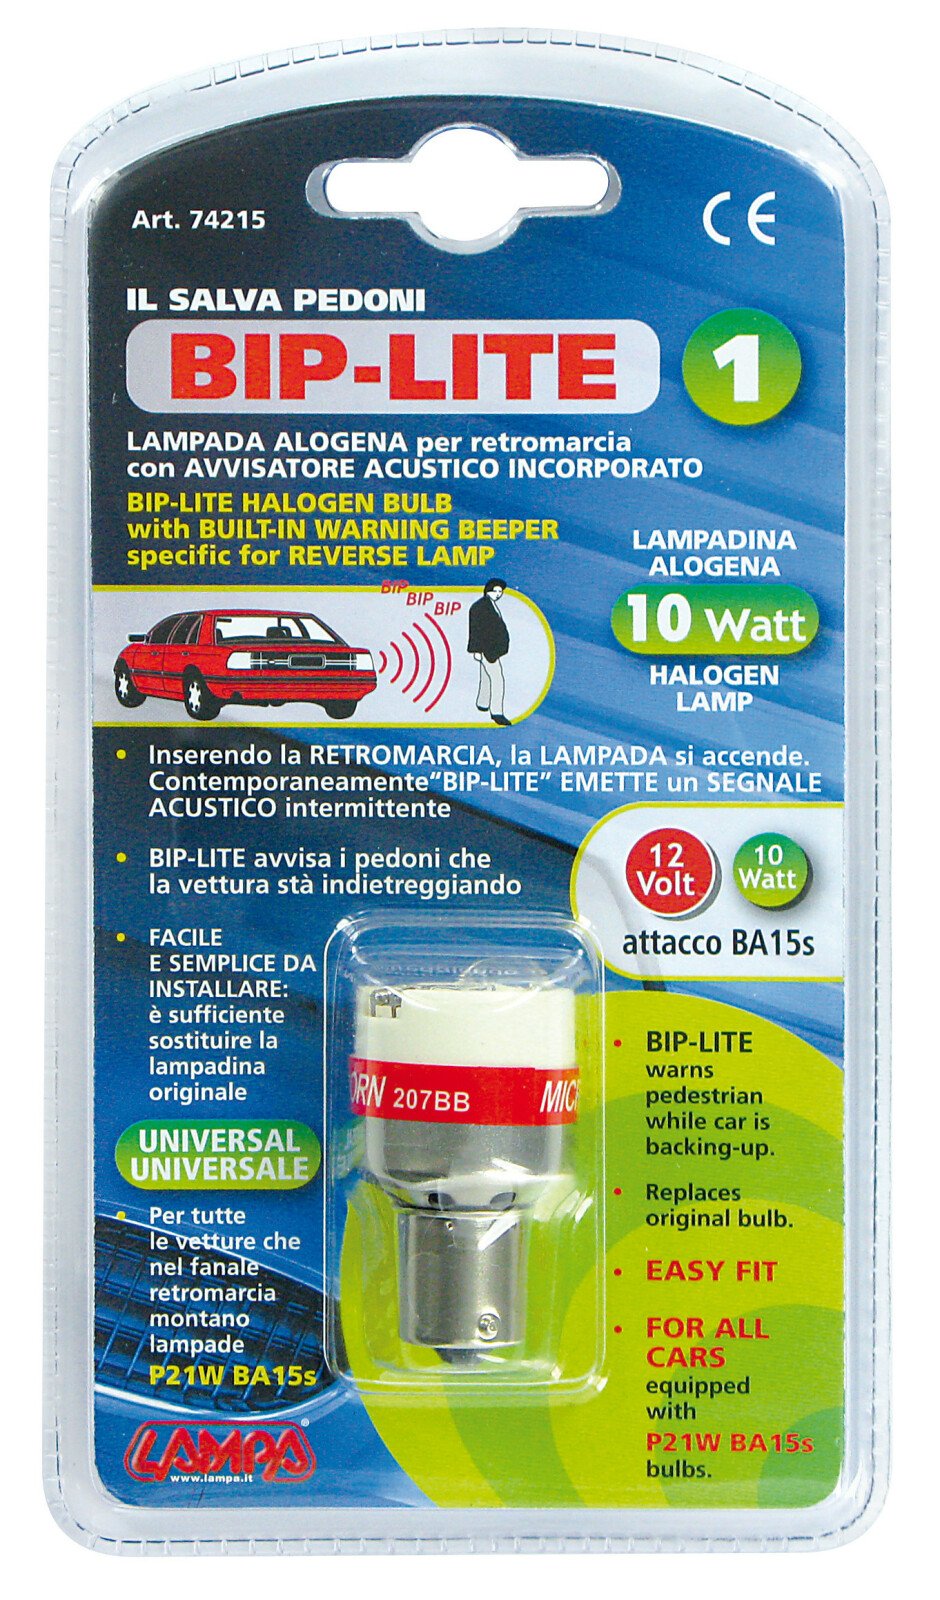 Bip-Lite I - 12V - Resealed thumb